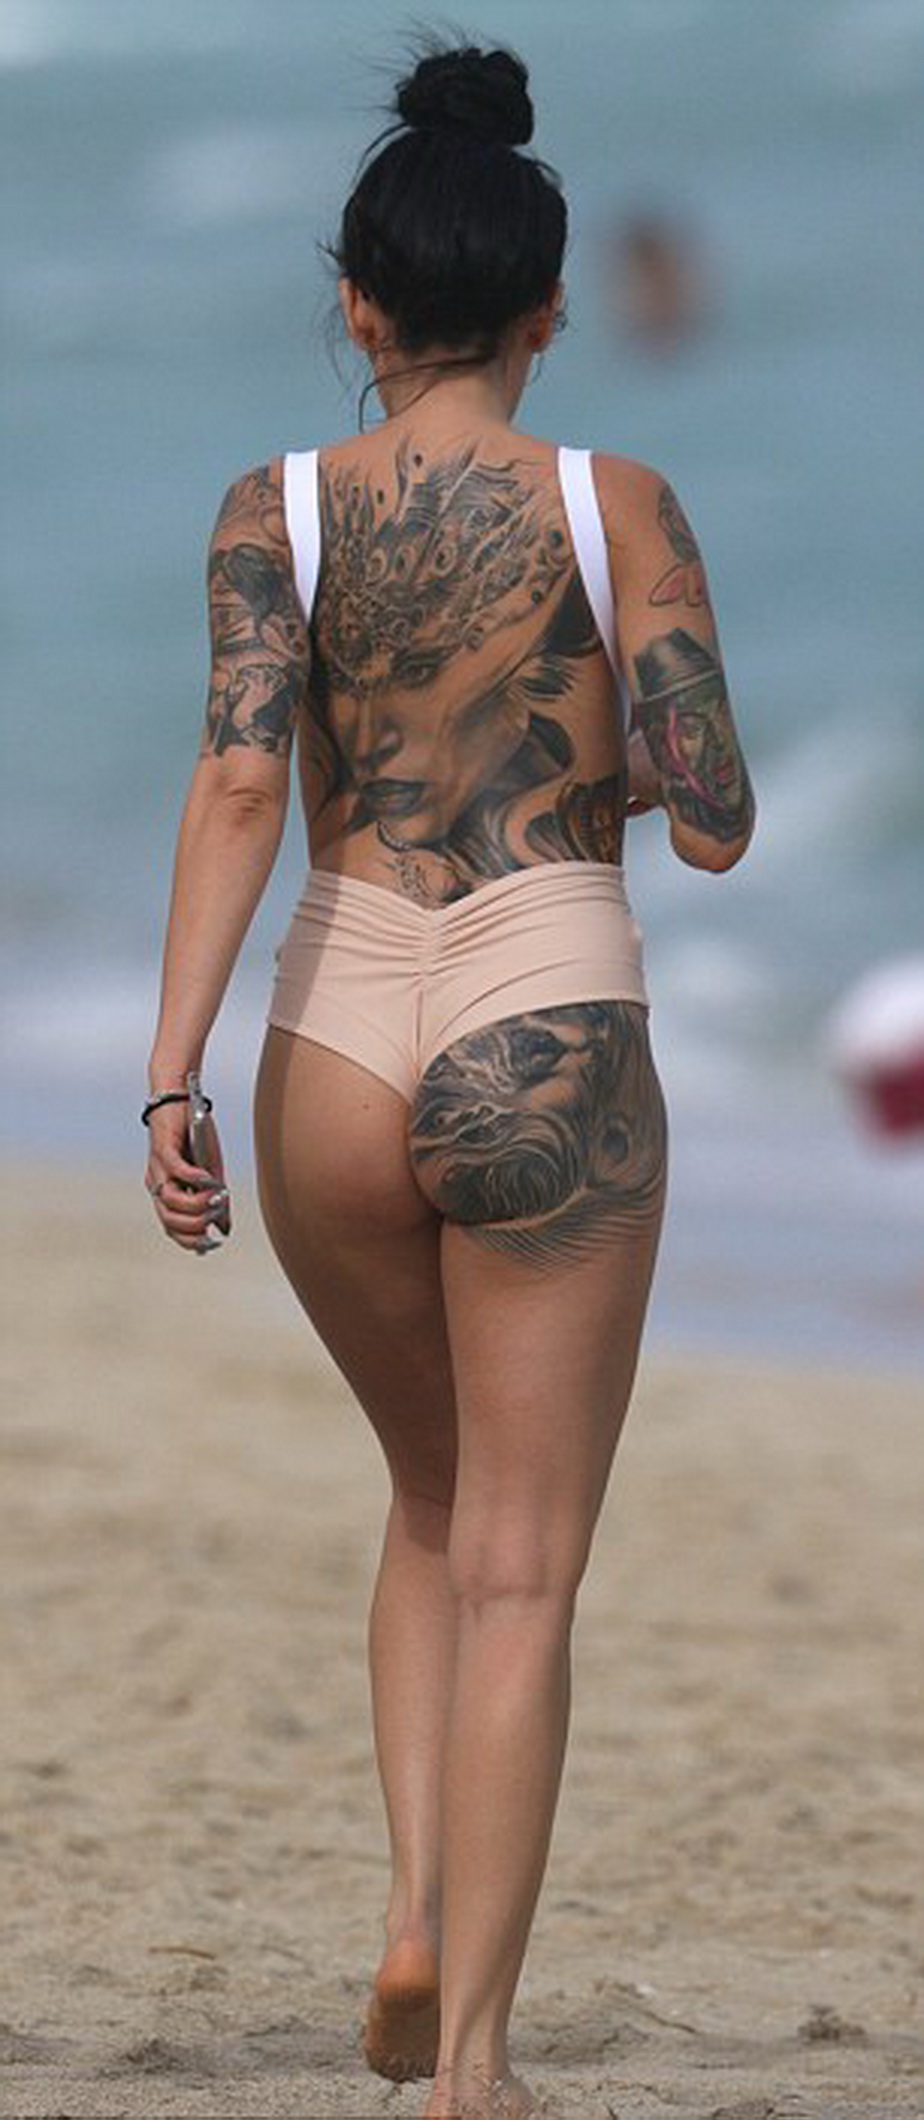 Tatuajele ei au fost atracţia plajei! Bruneta care a încins imaginaţia în Miami 